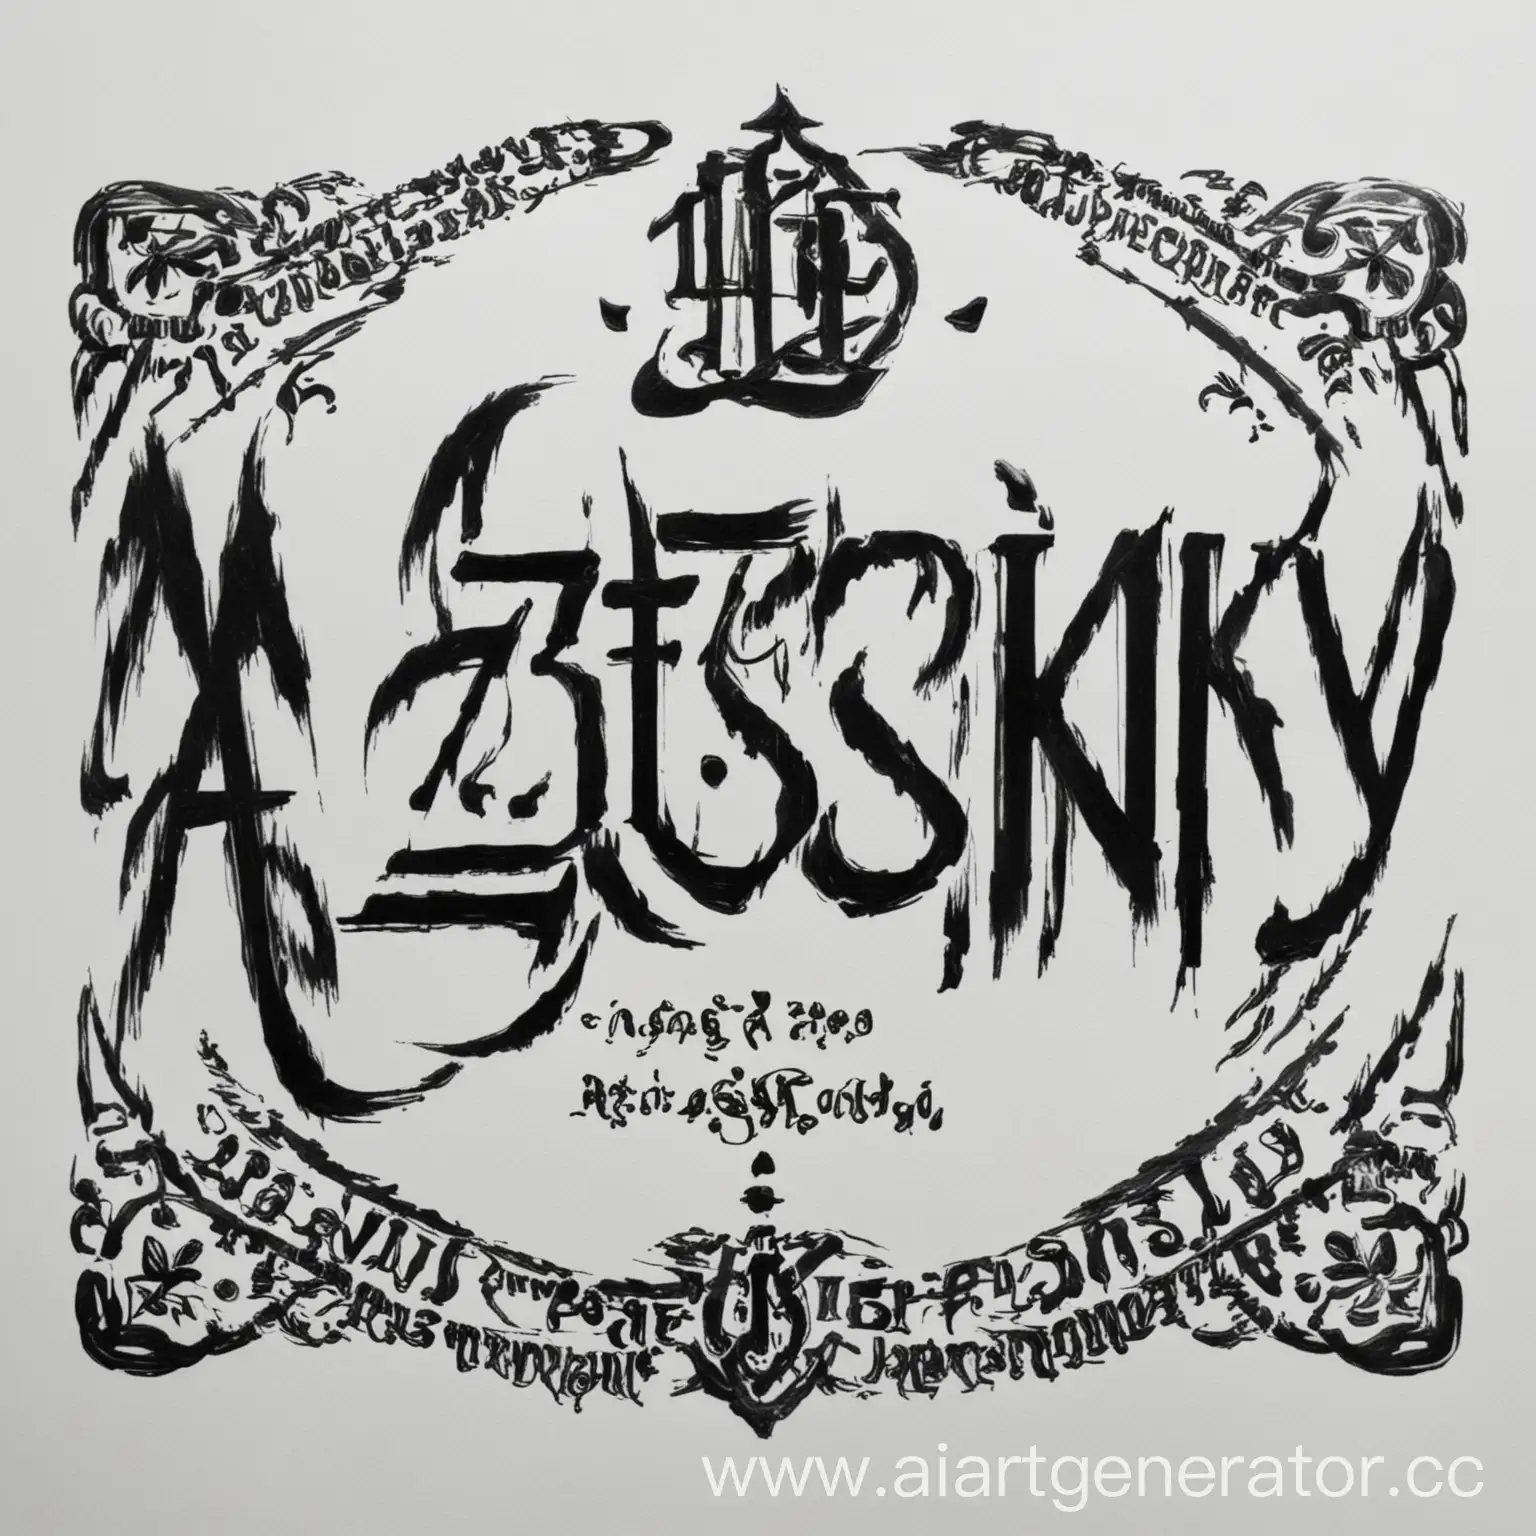 Black-Azotskiy-Inscription-on-White-Background